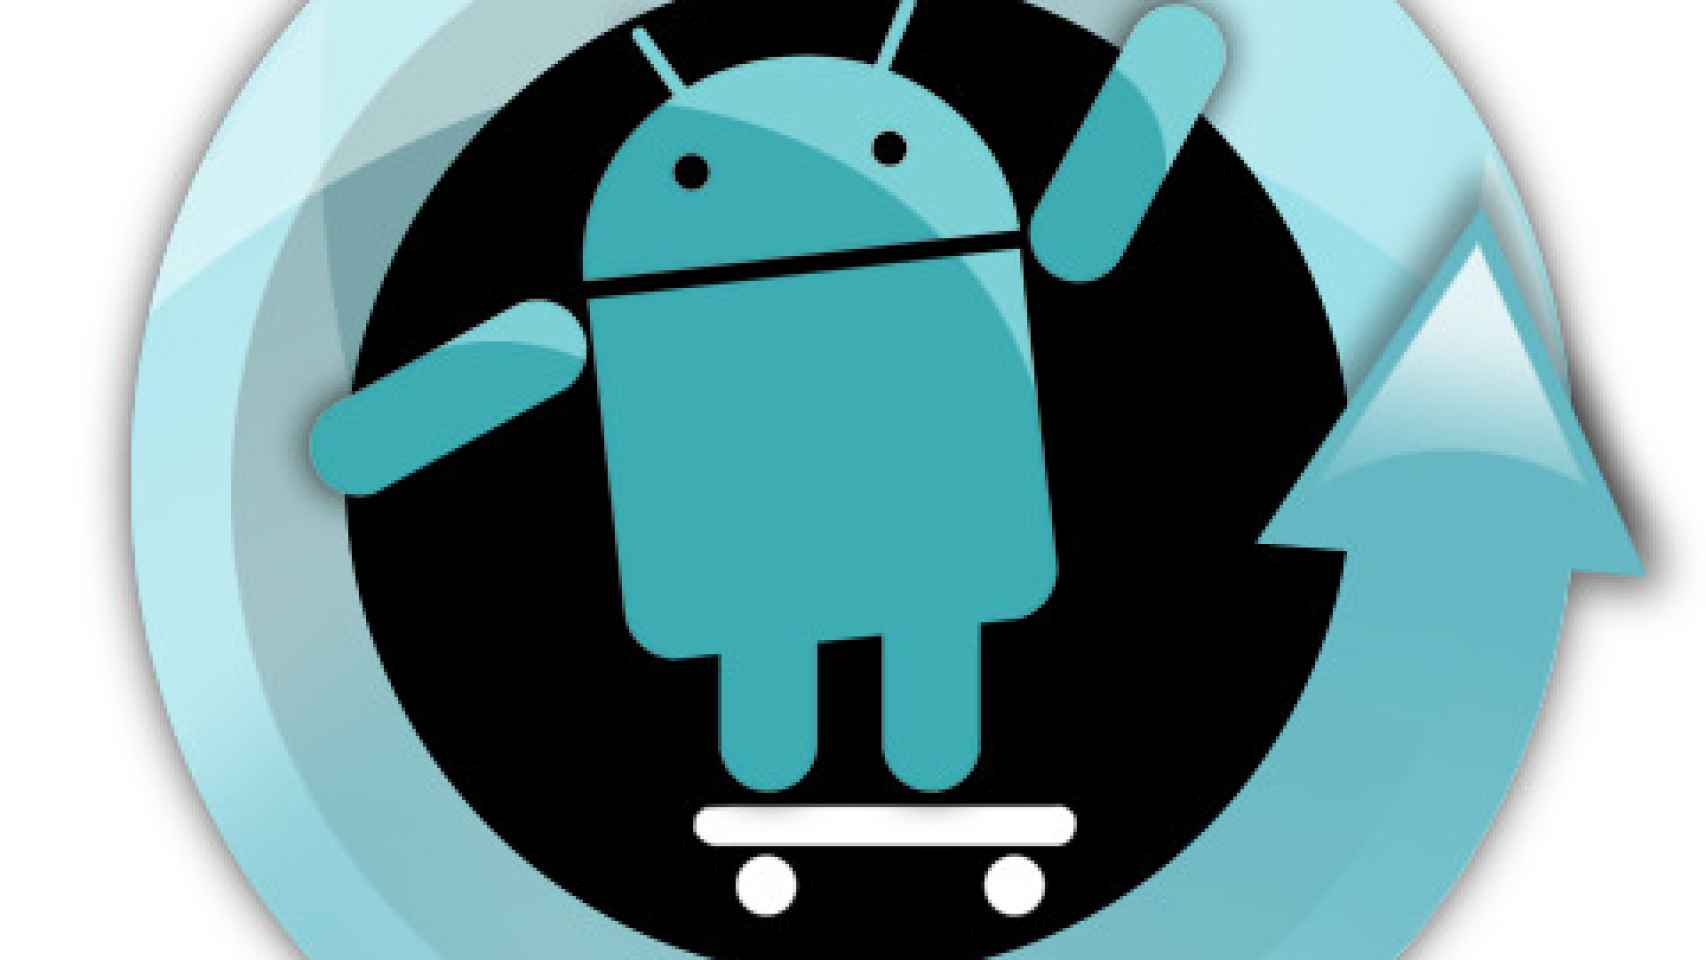 La historia de Cyanogen en Android, de principio a fin